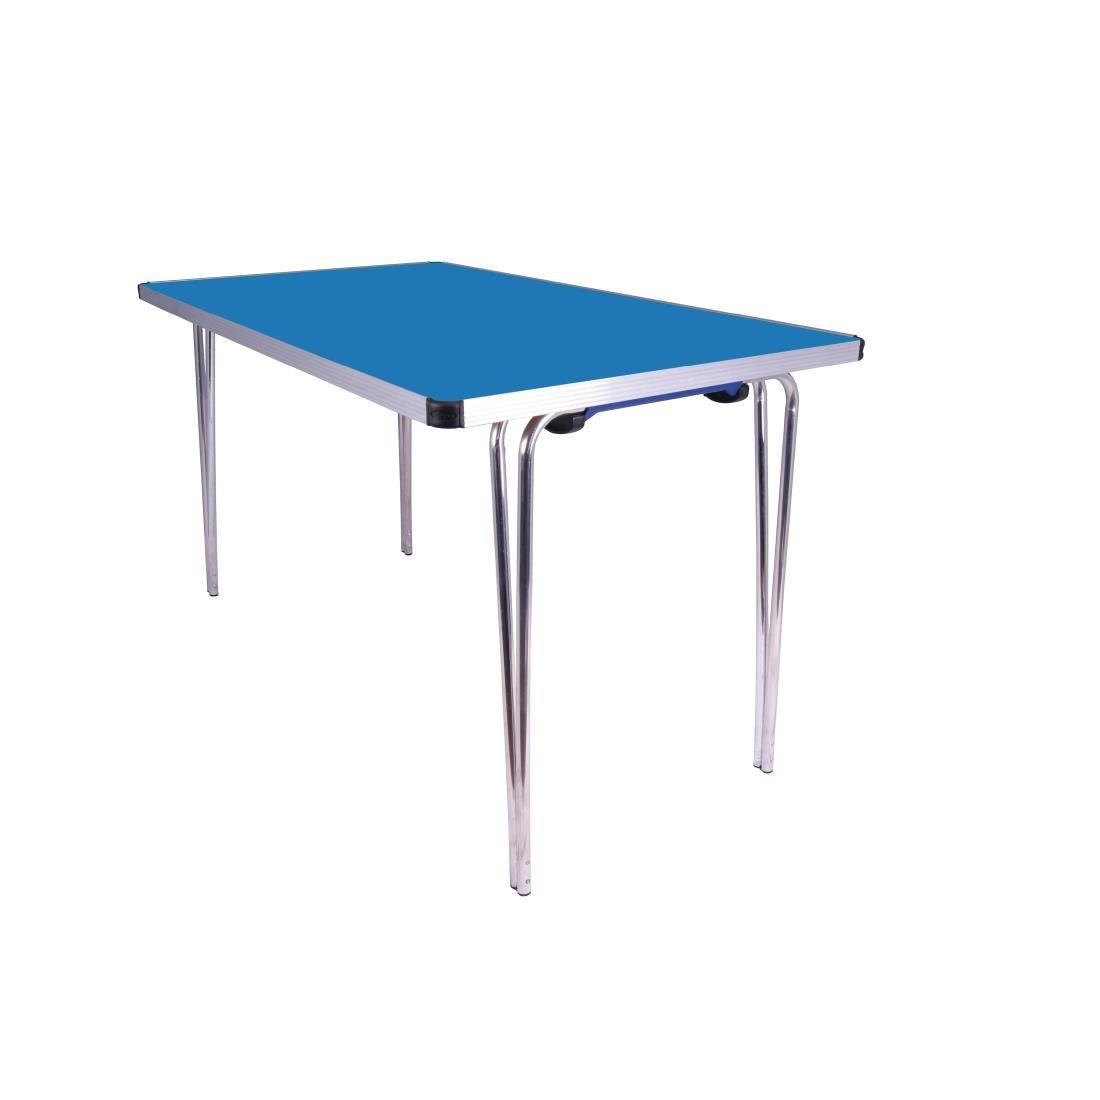 Gopak Contour Folding Table Blue 4ft - DM945  - 1